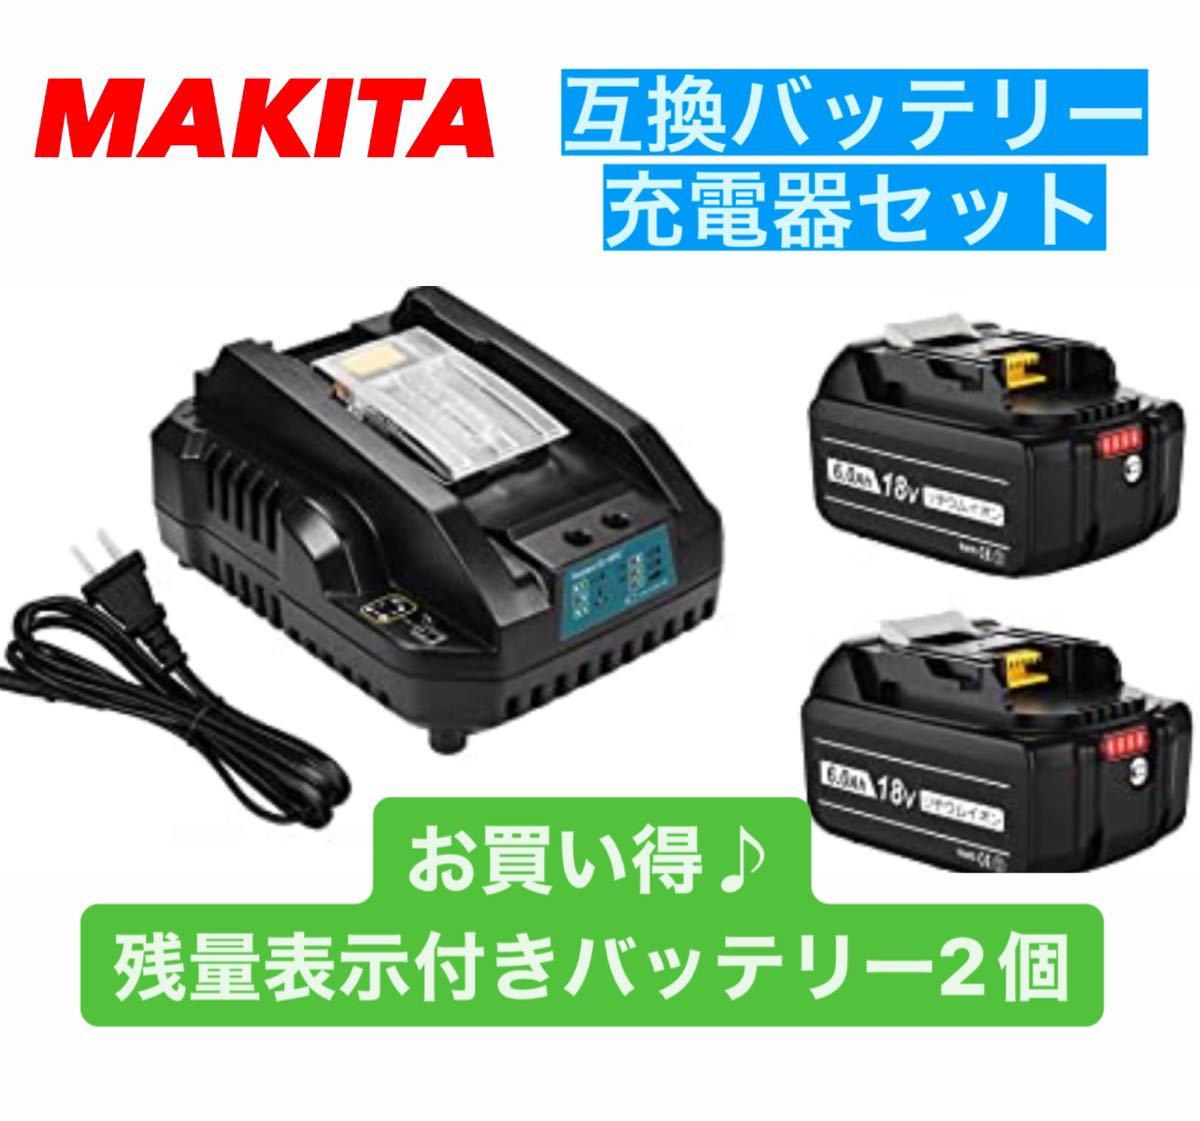 日本限定 送料無料 マキタ 互換 個 充電器セット 電動工具